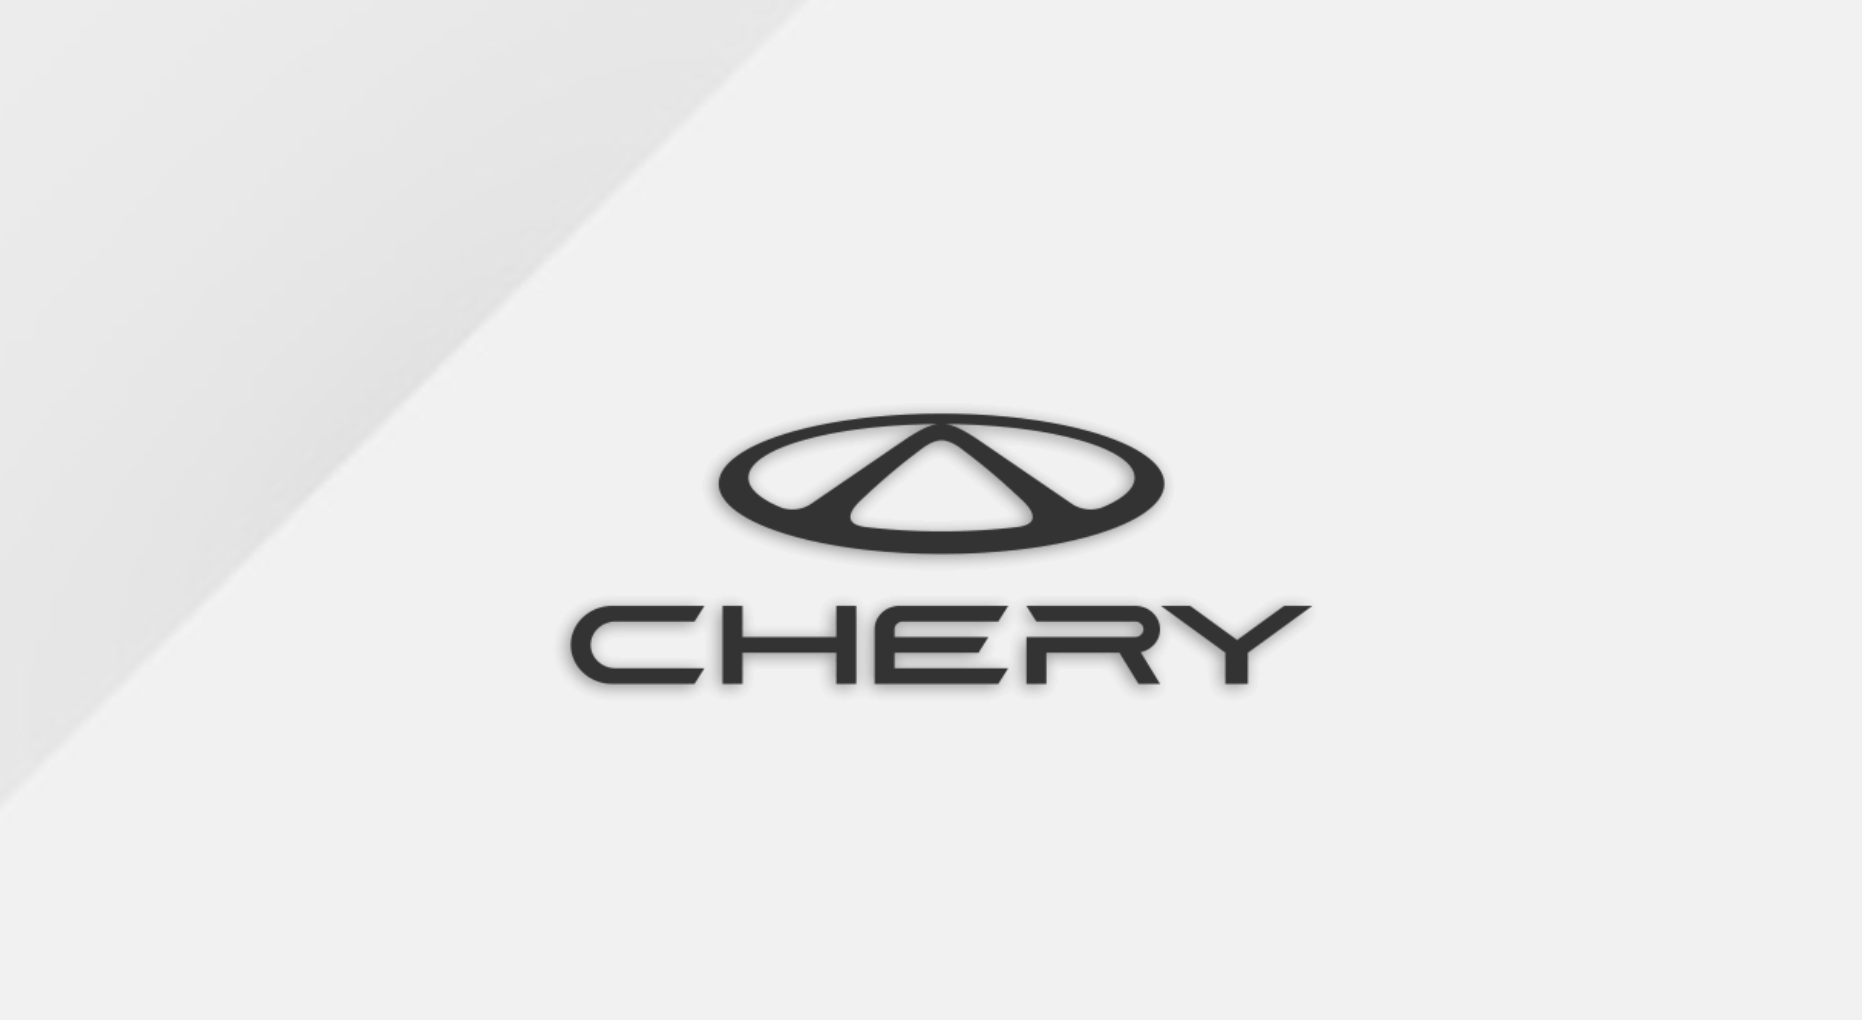 Chery Автомобиль: История амбиций, инноваций и глобальной экпансии